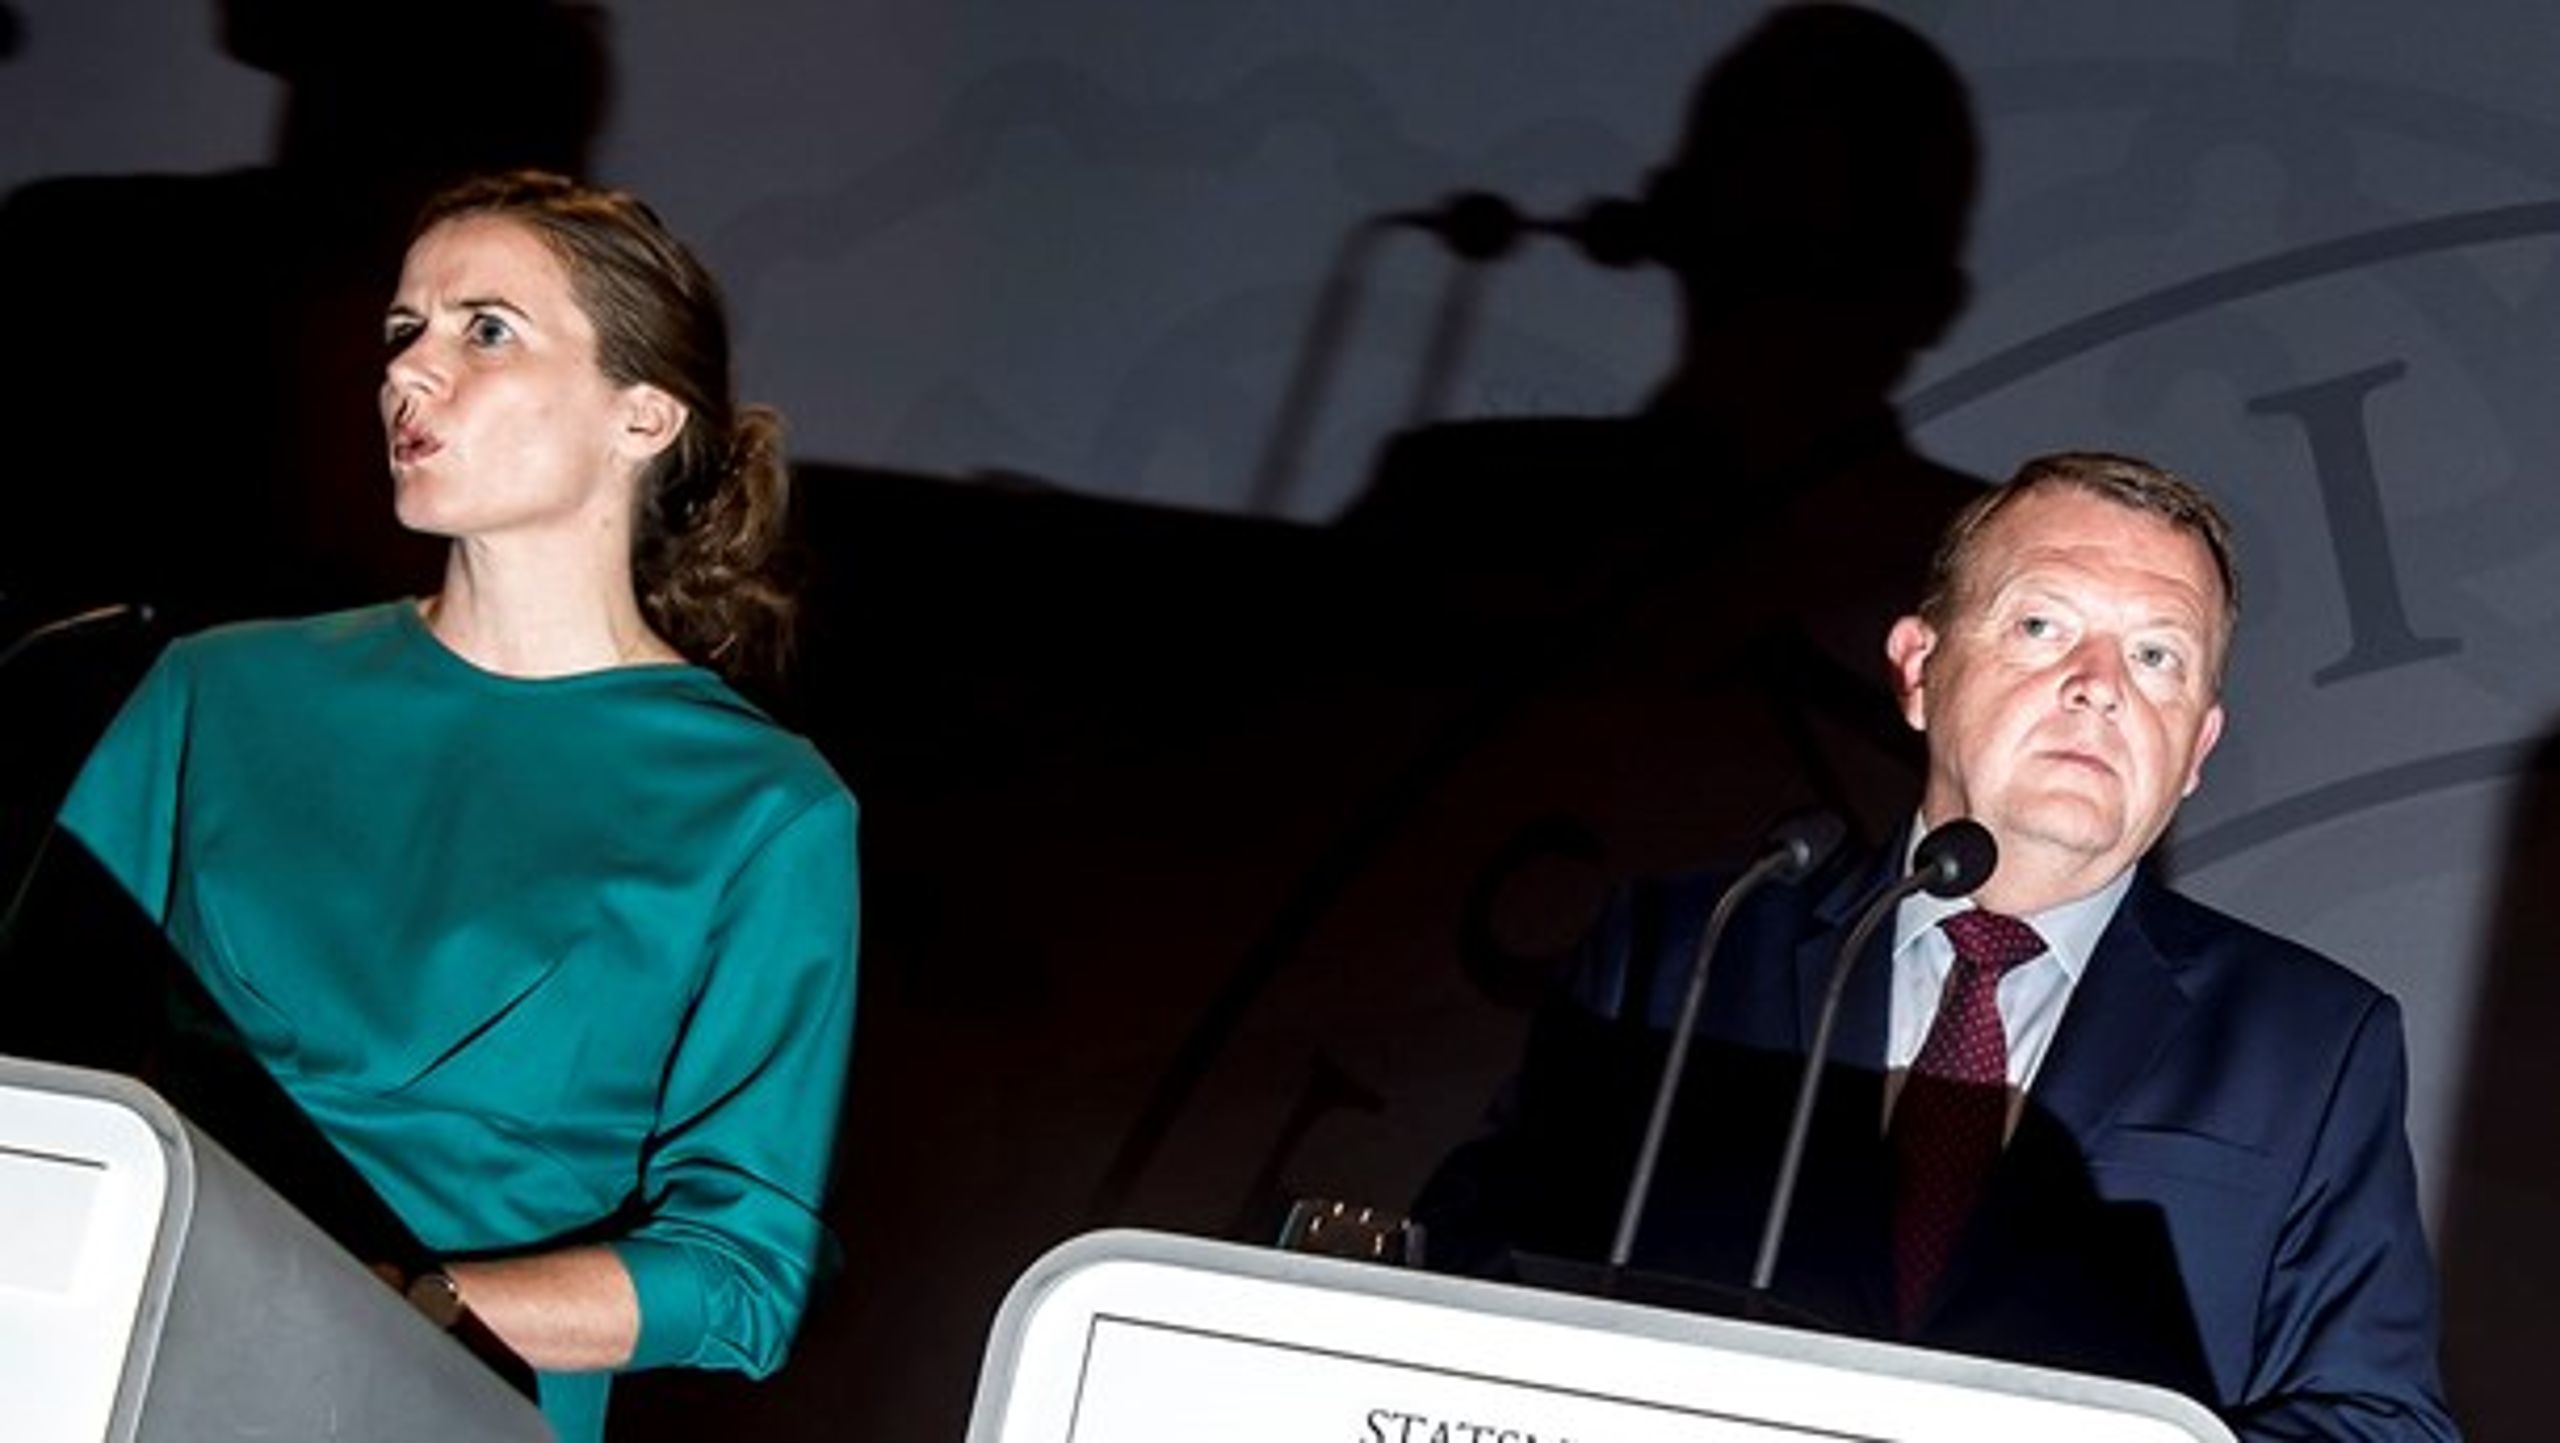 Sundhedsminister Ellen Trane Nørby (V) og Lars Løkke Rasmussen (V) ved fremlæggelsen af regeringens psykiatriudspil i september (arkivfoto).